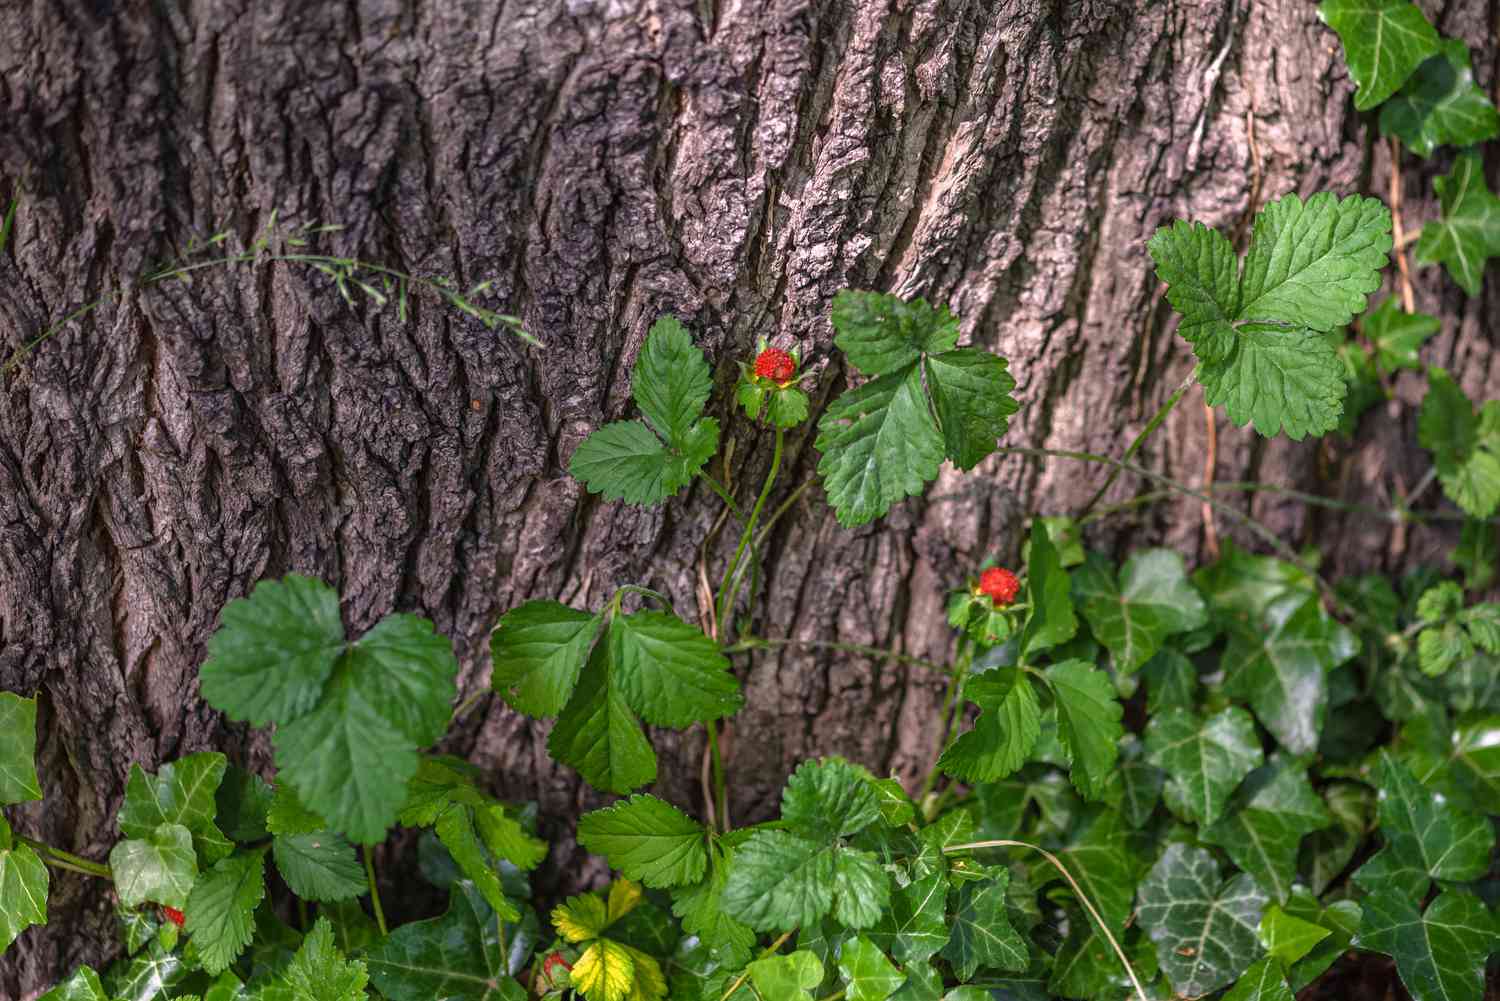 Scheinerdbeerpflanze mit abgerundeten, gezähnten Blättern an einem Baumstamm mit roten Früchten